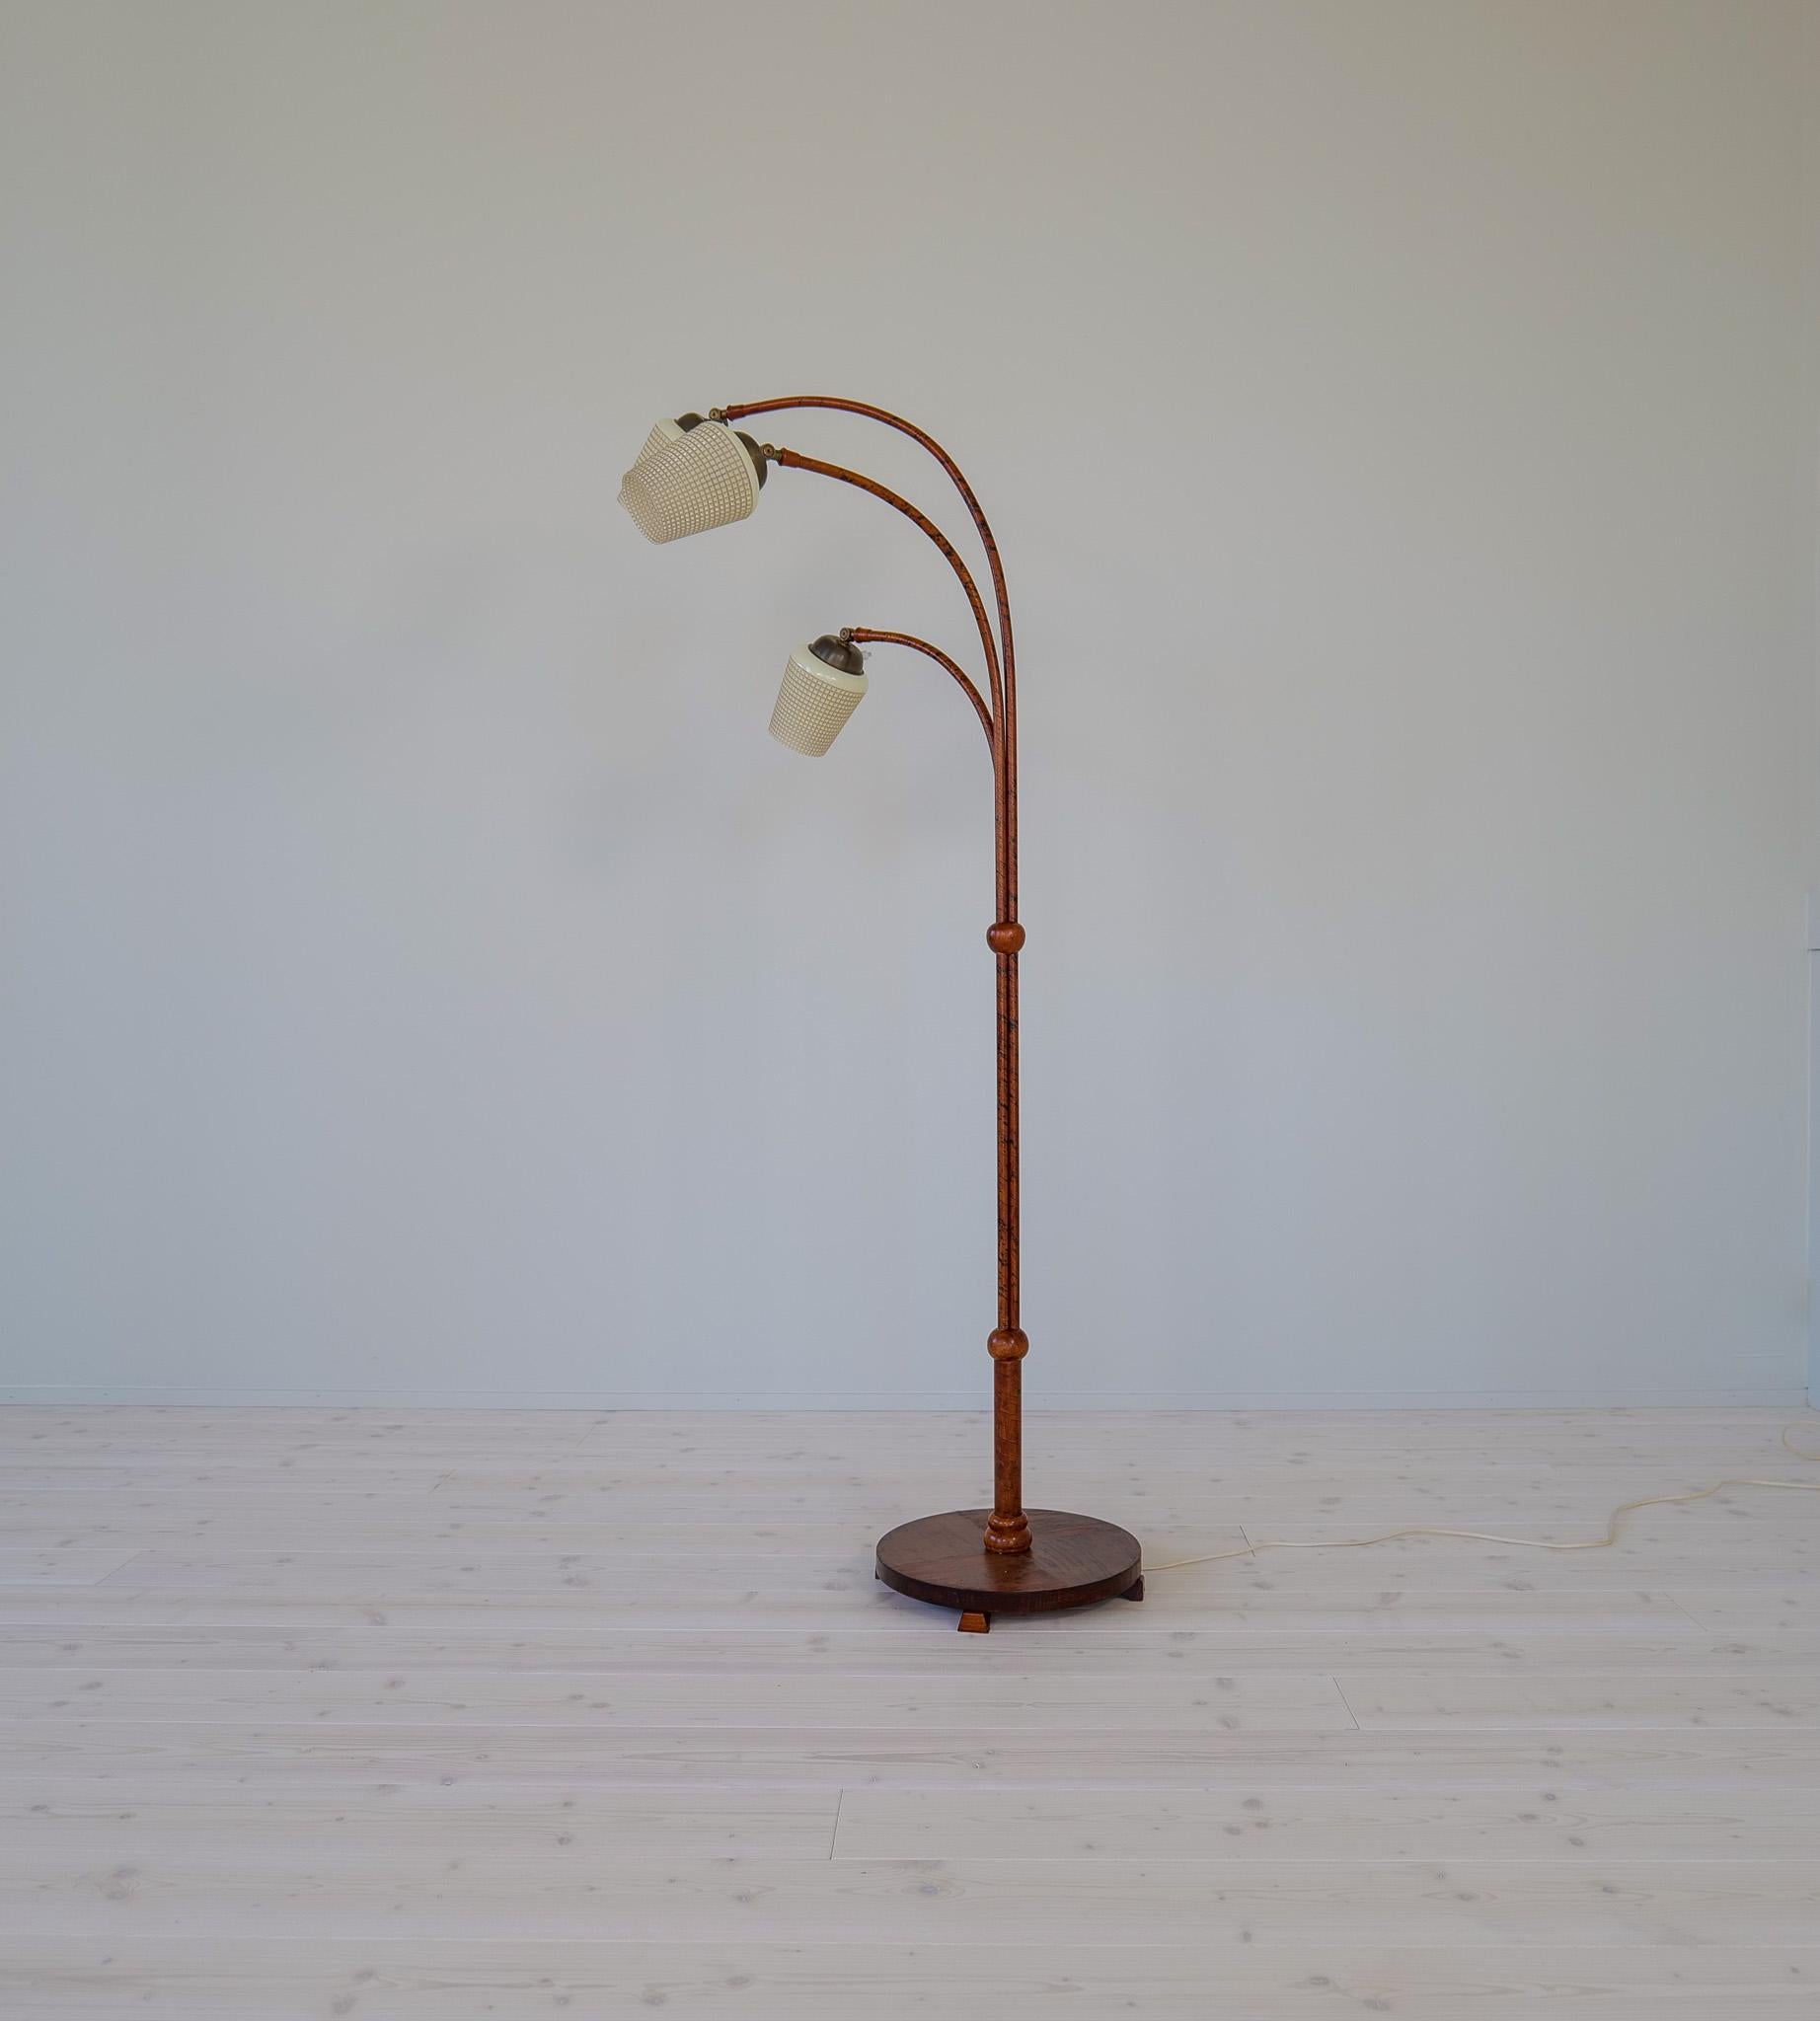 Diese Art-Deco-Stehlampe aus Birkenrinde und gebeizter Ulme wurde in den 1940er Jahren in Schweden hergestellt. Der Sockel ist aus gebeizter Ulme, der Stab aus Birkenrinde mit Ästen. Die Schirme sind aus Glas gefertigt. 

Guter Vintage-Zustand mit